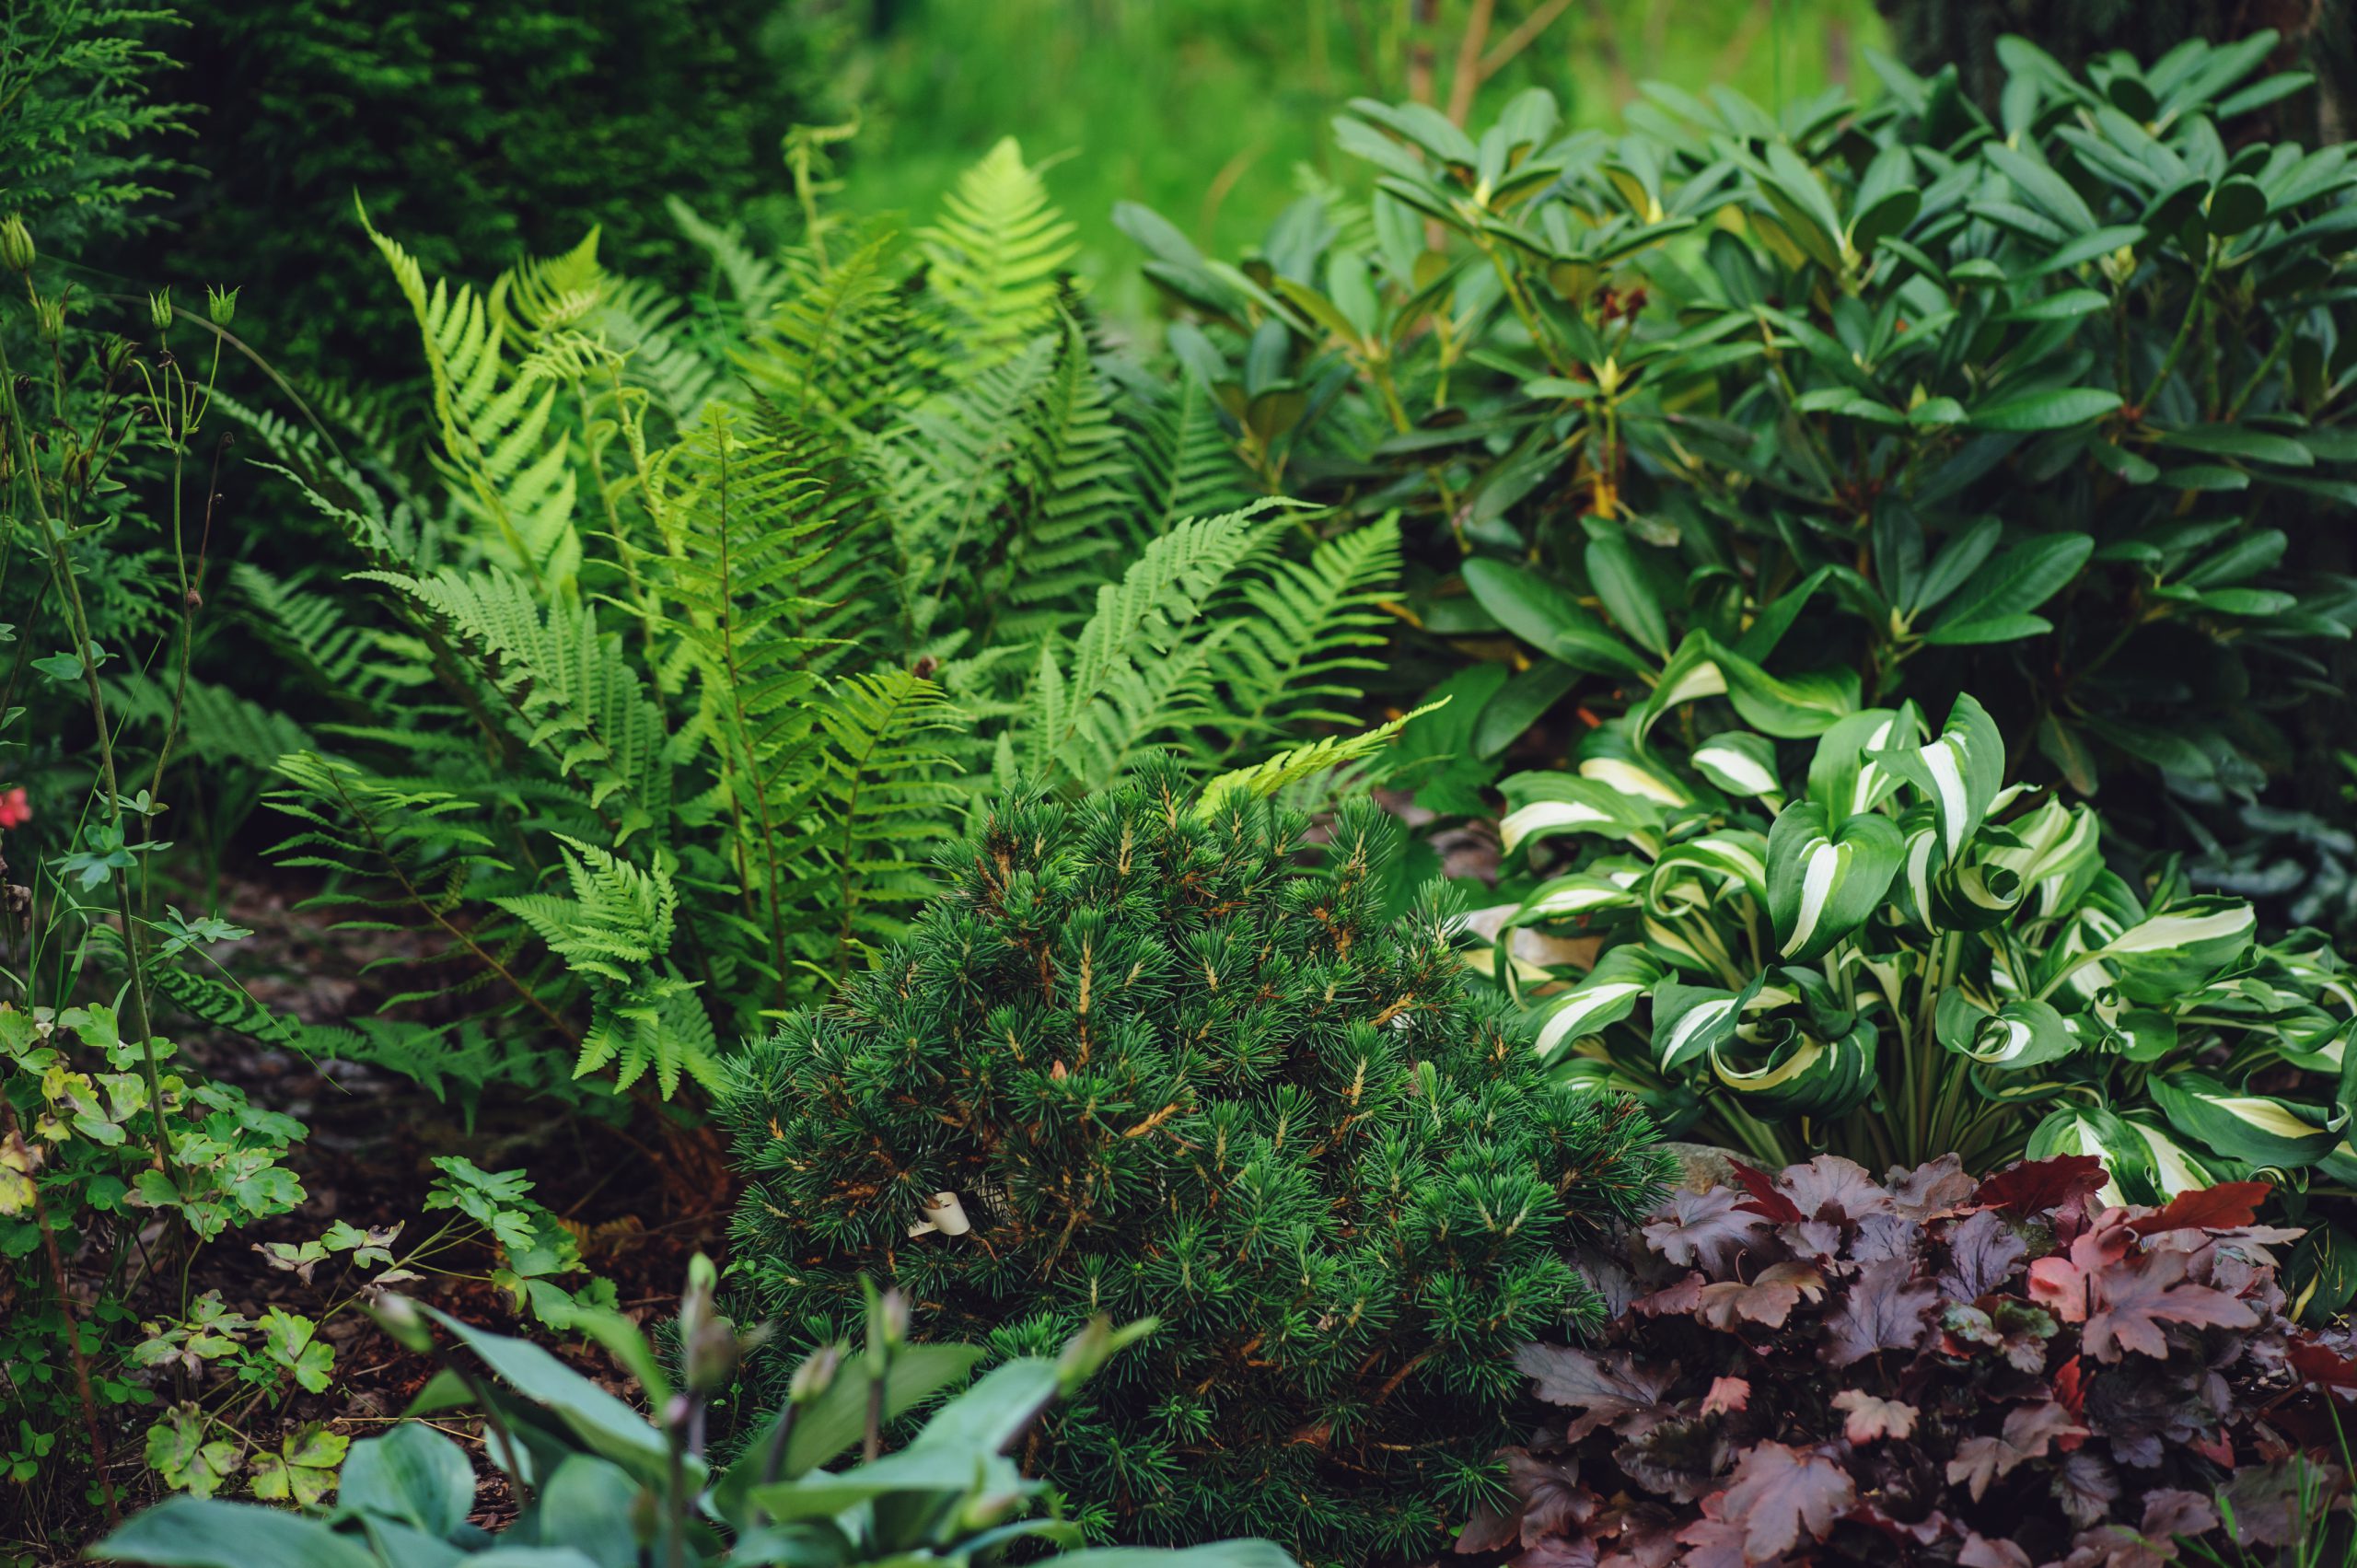 mixed border with shady tolerance plants - ferns, hostas and heucheras in summer garden